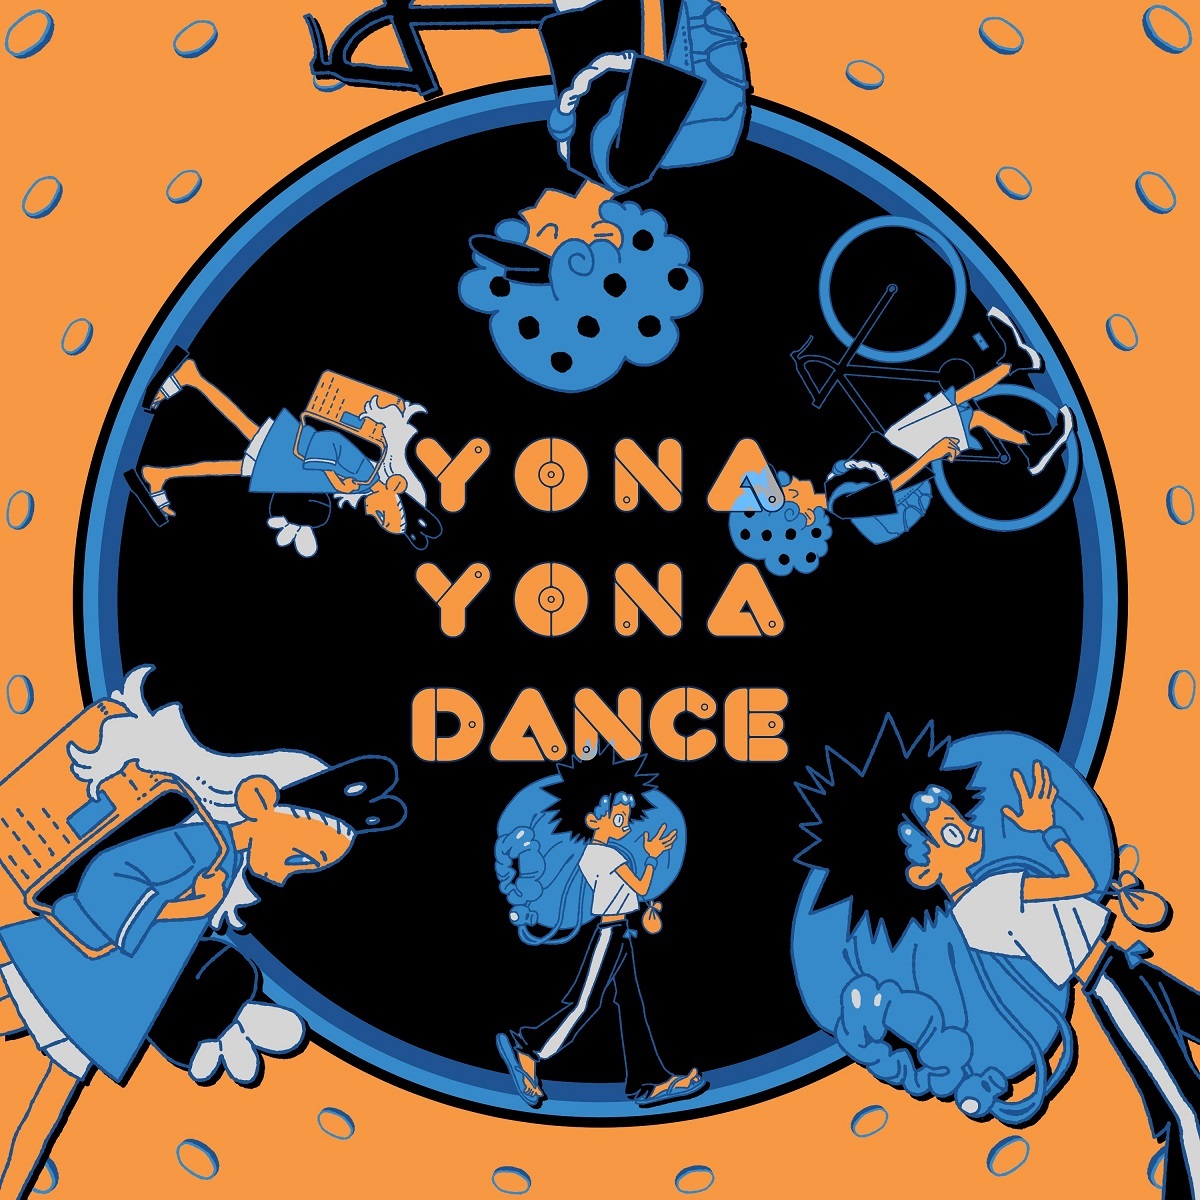 画像 和田アキ子史上初 全編イラストによる Yona Yona Dance Mv公開 の画像4 4 Spice エンタメ特化型情報メディア スパイス